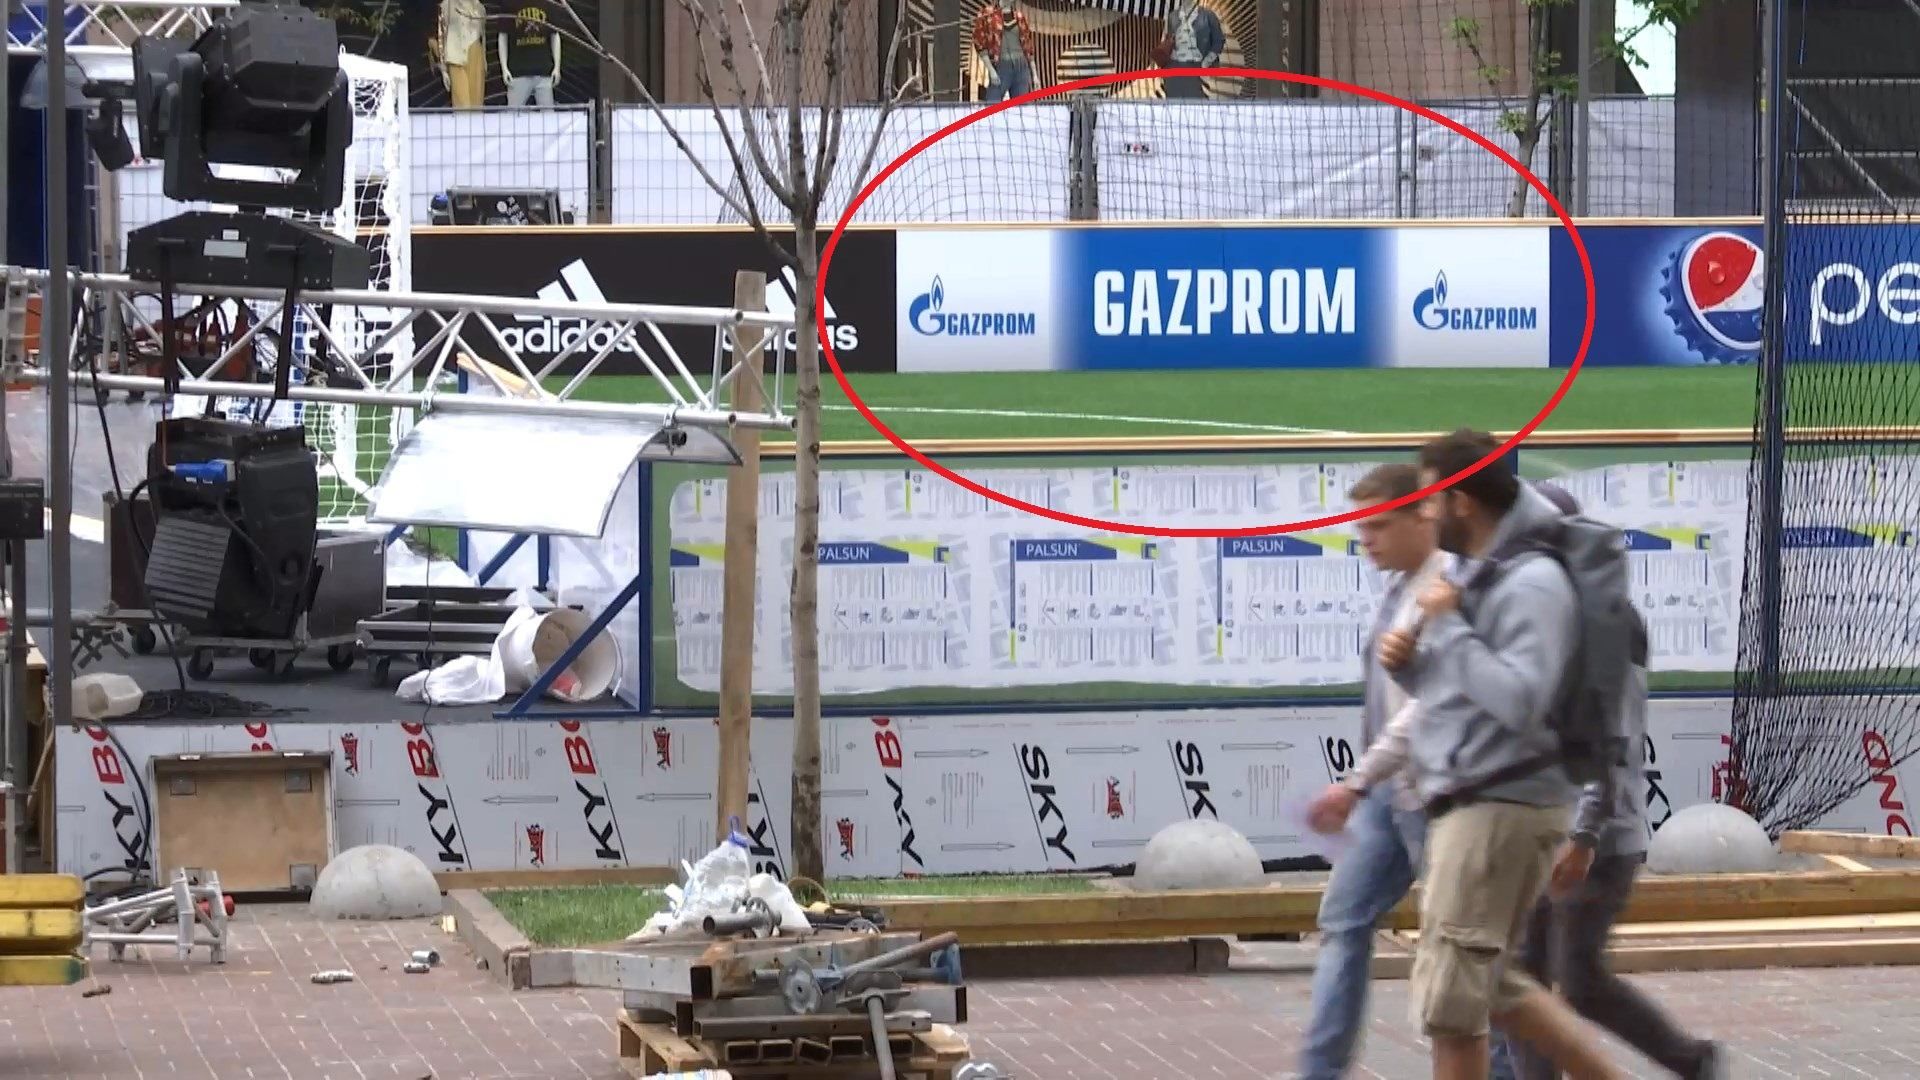 Українські фани помітили рекламу російського "Газпрому" у центрі Києва: фото